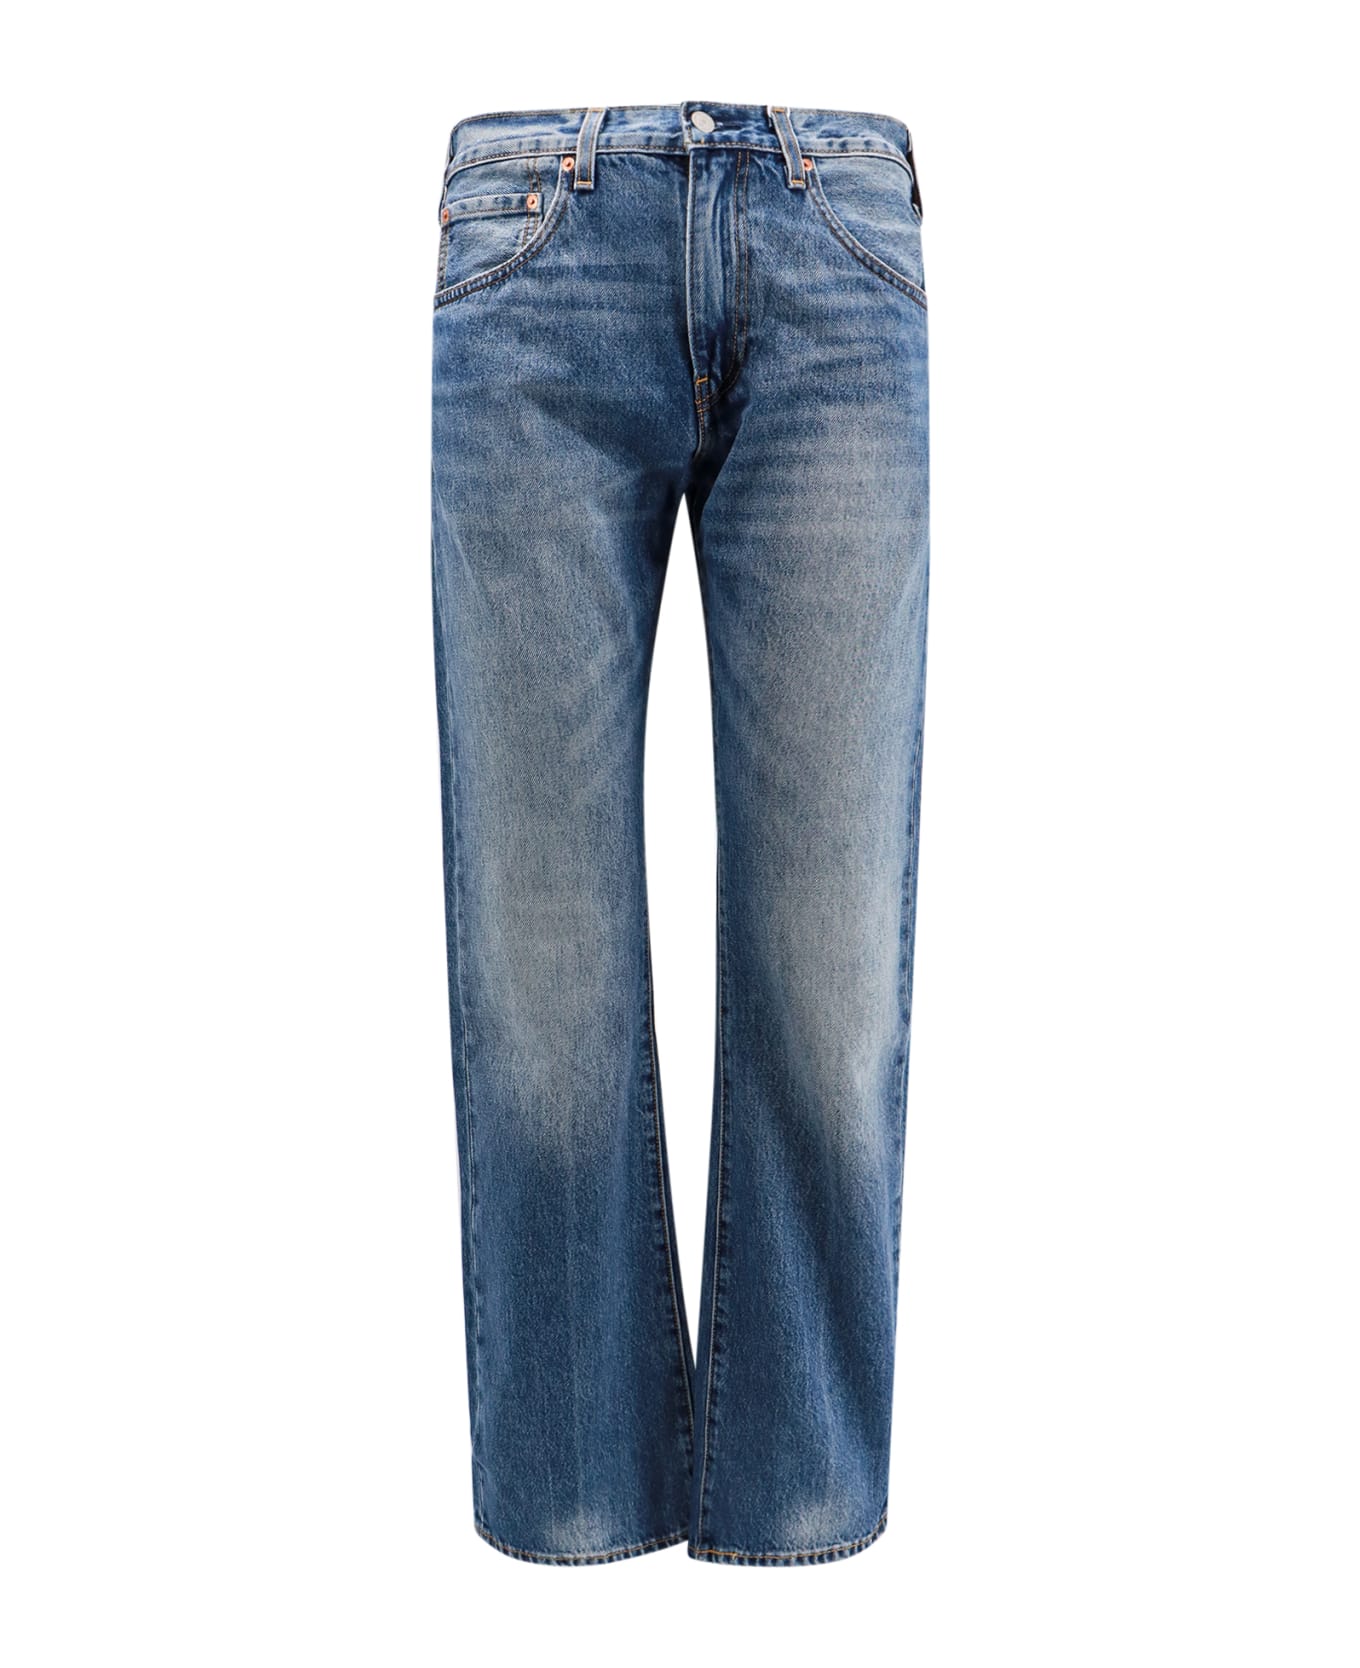 Levi's 517 Bootcut Jeans - Blue